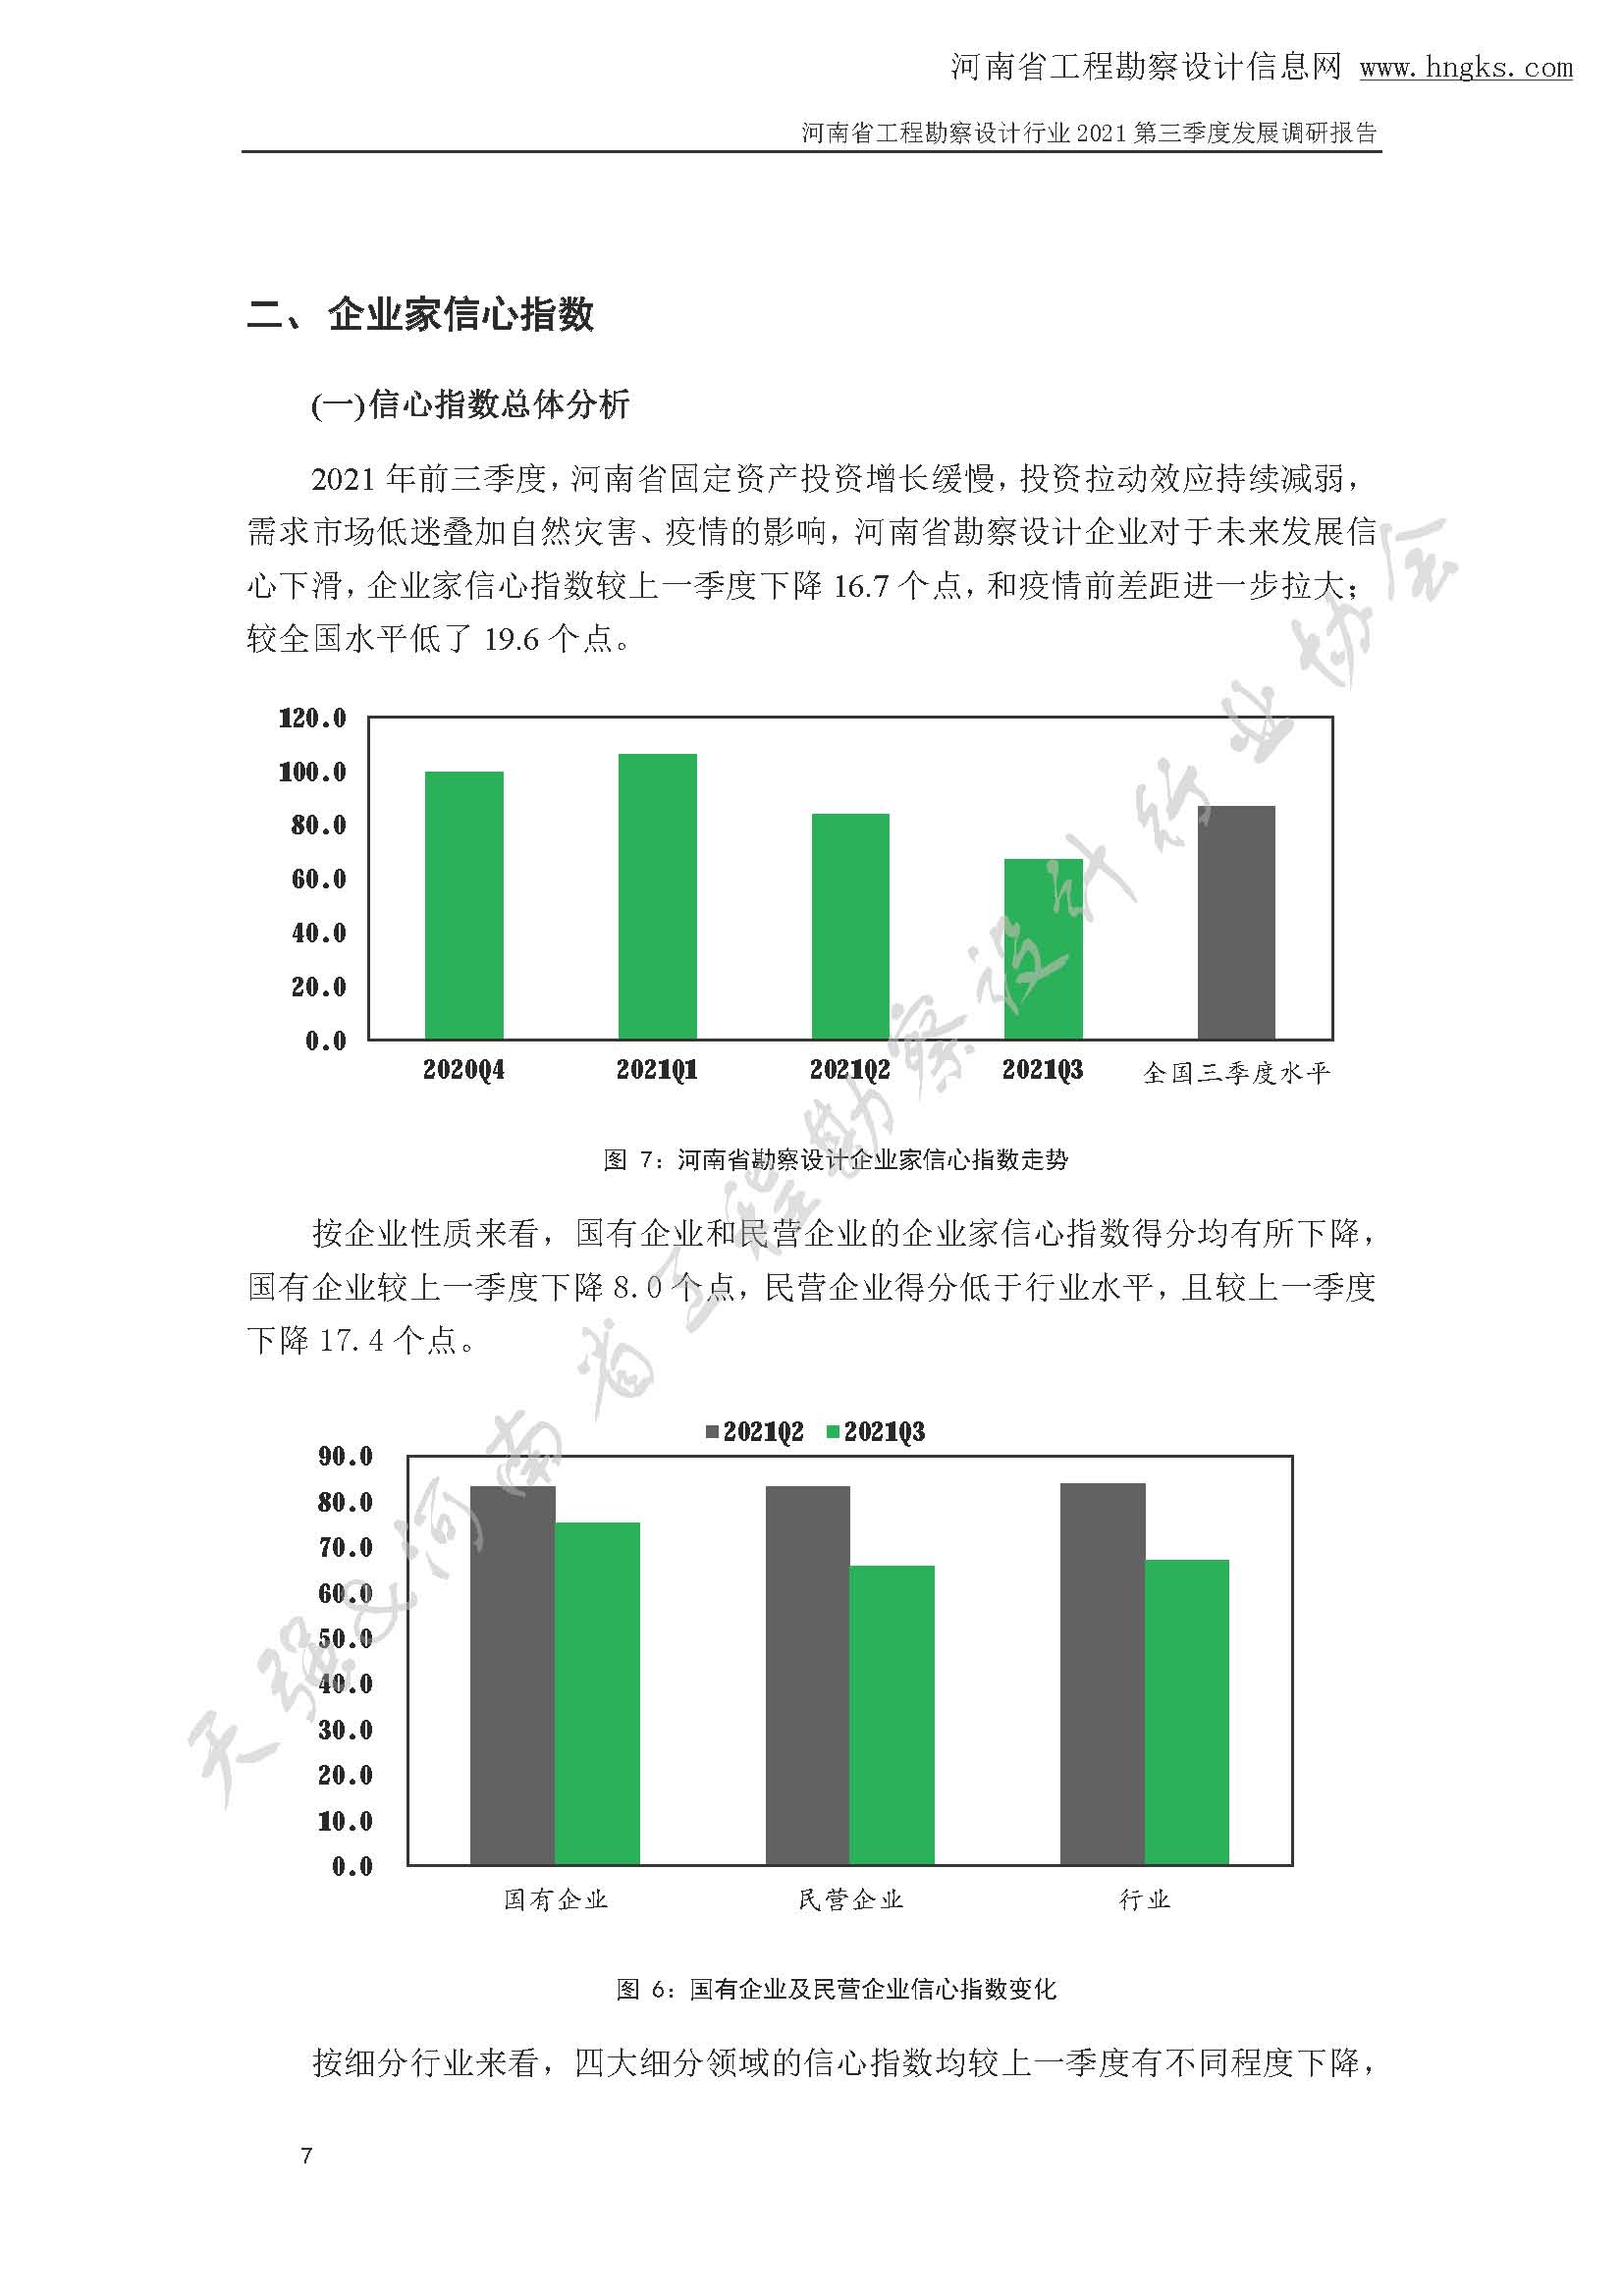 河南省工程勘察设计企业2021年第三季度发展调研报告-公开版_页面_10.jpg